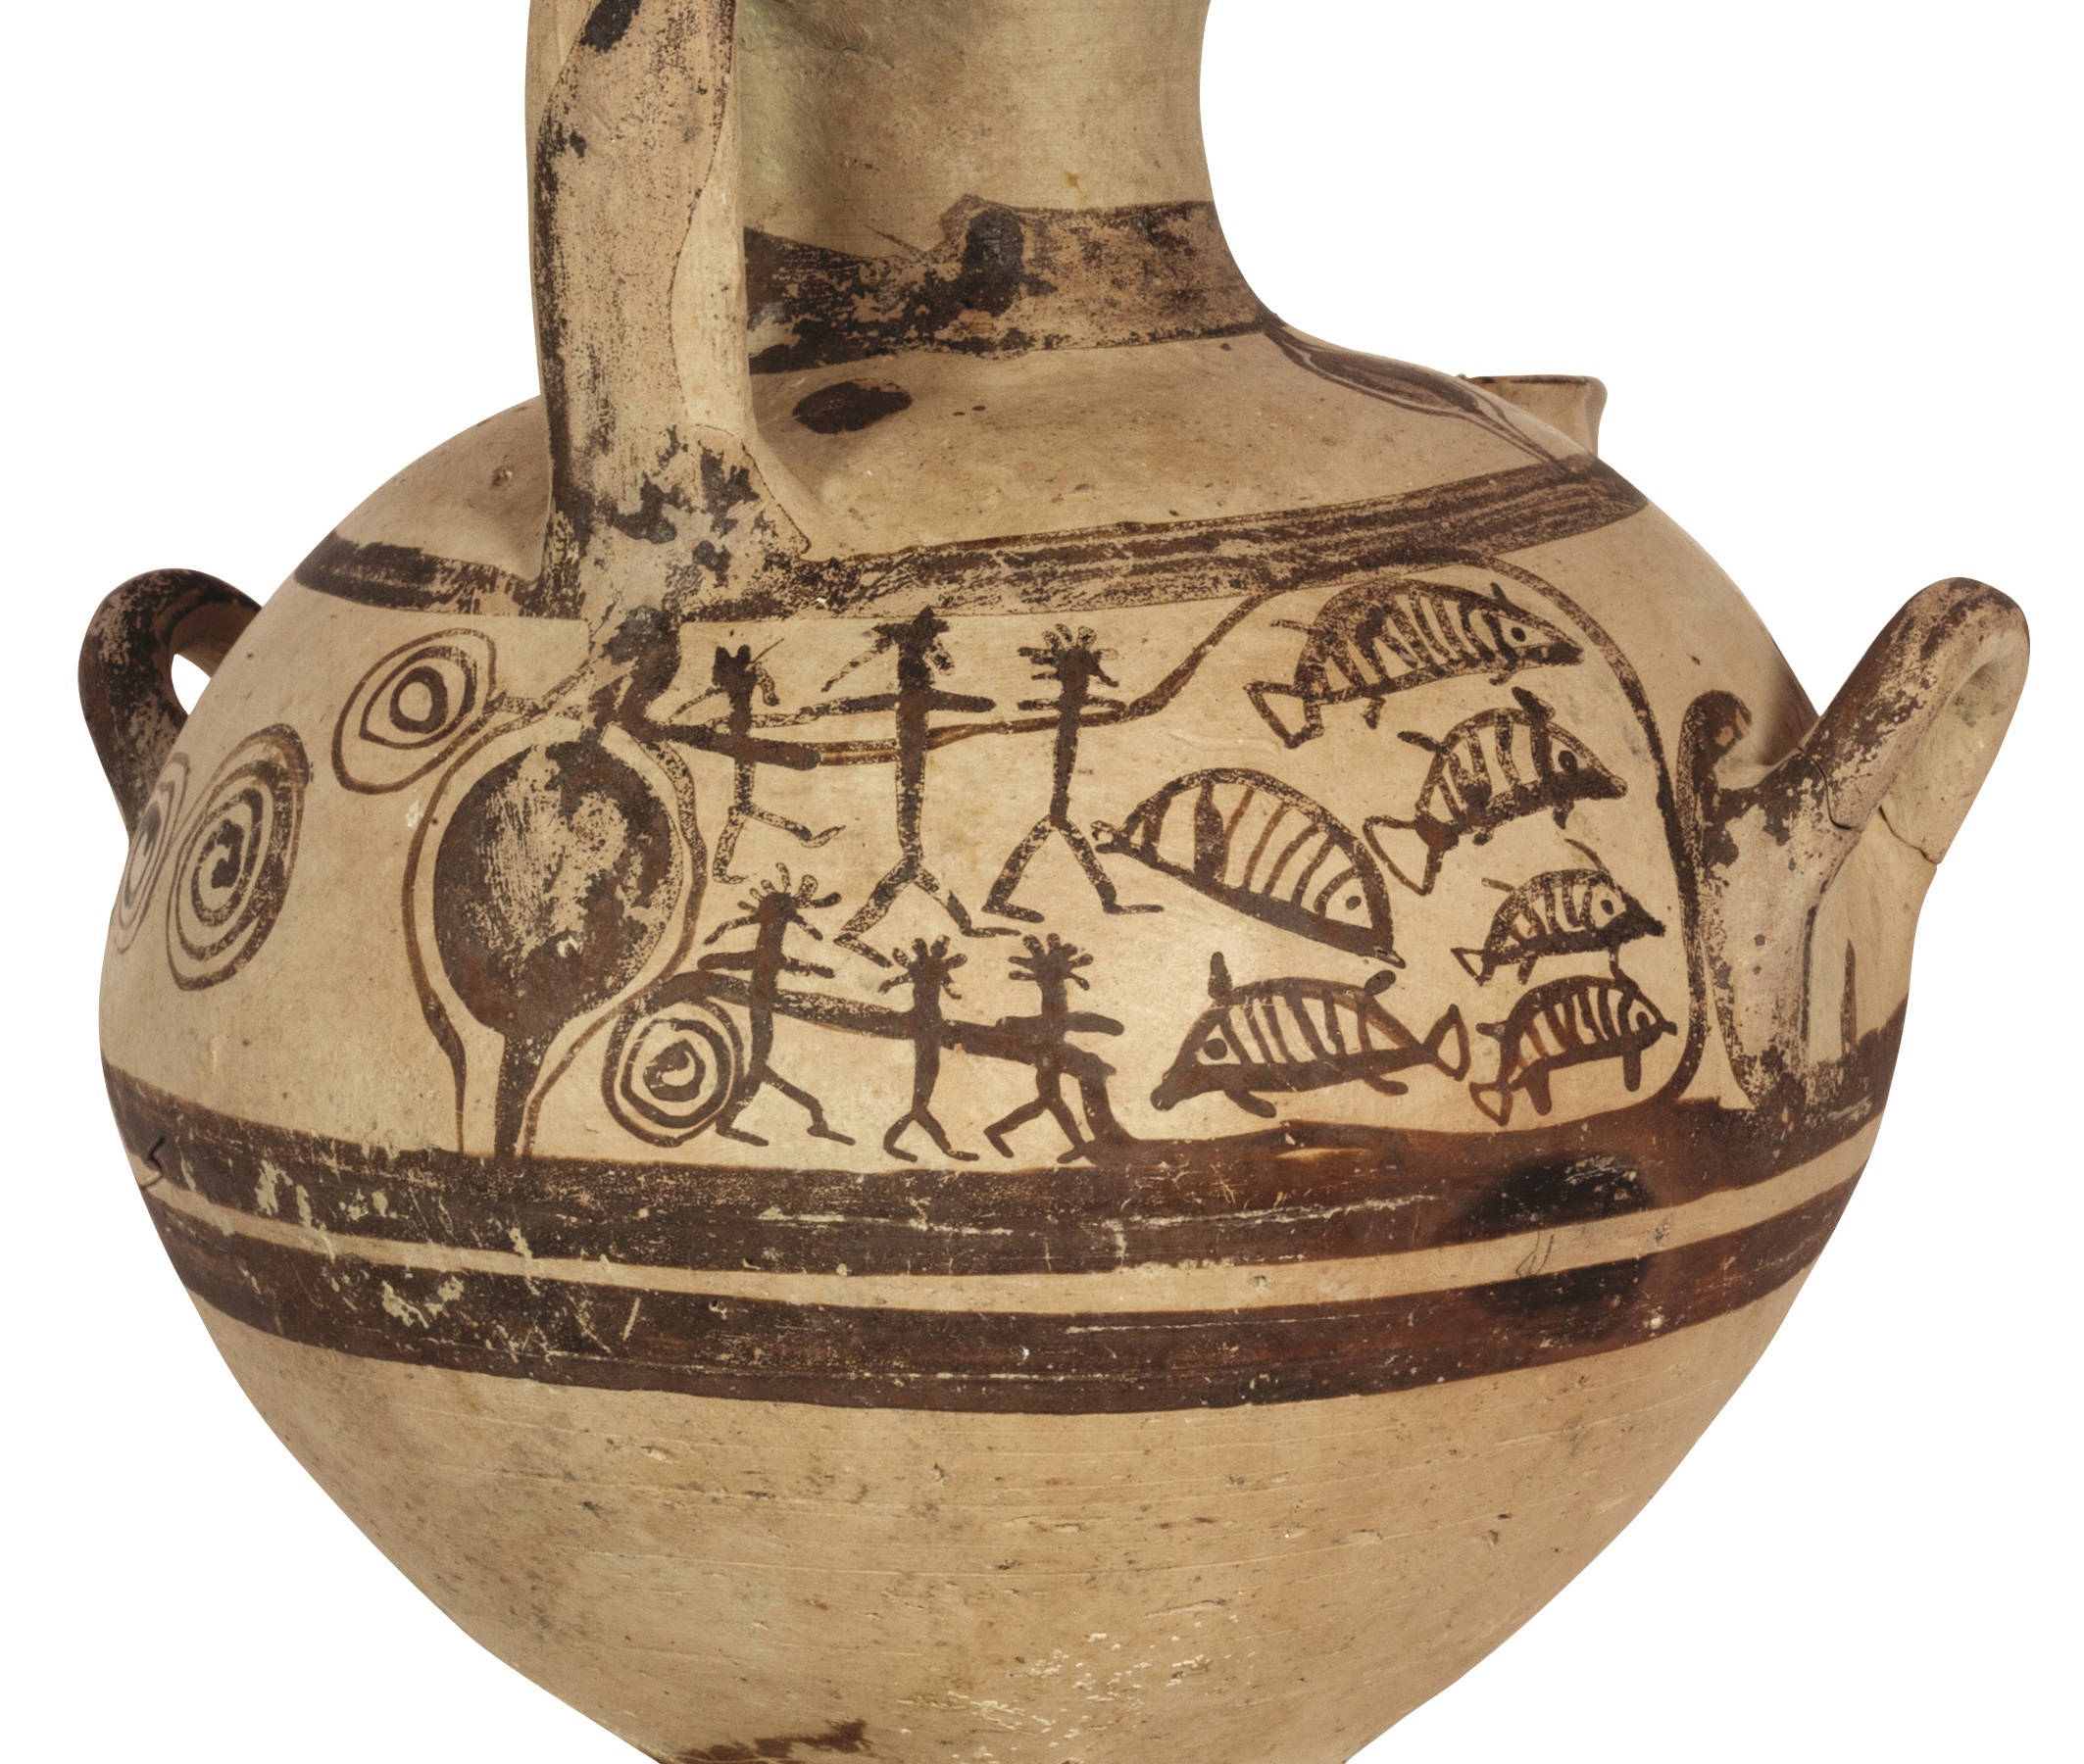 “Από τον κόσμο του Ομήρου. Τήνος και Κυκλάδες στη Μυκηναϊκή εποχή” στο Μουσείο Μπενάκη